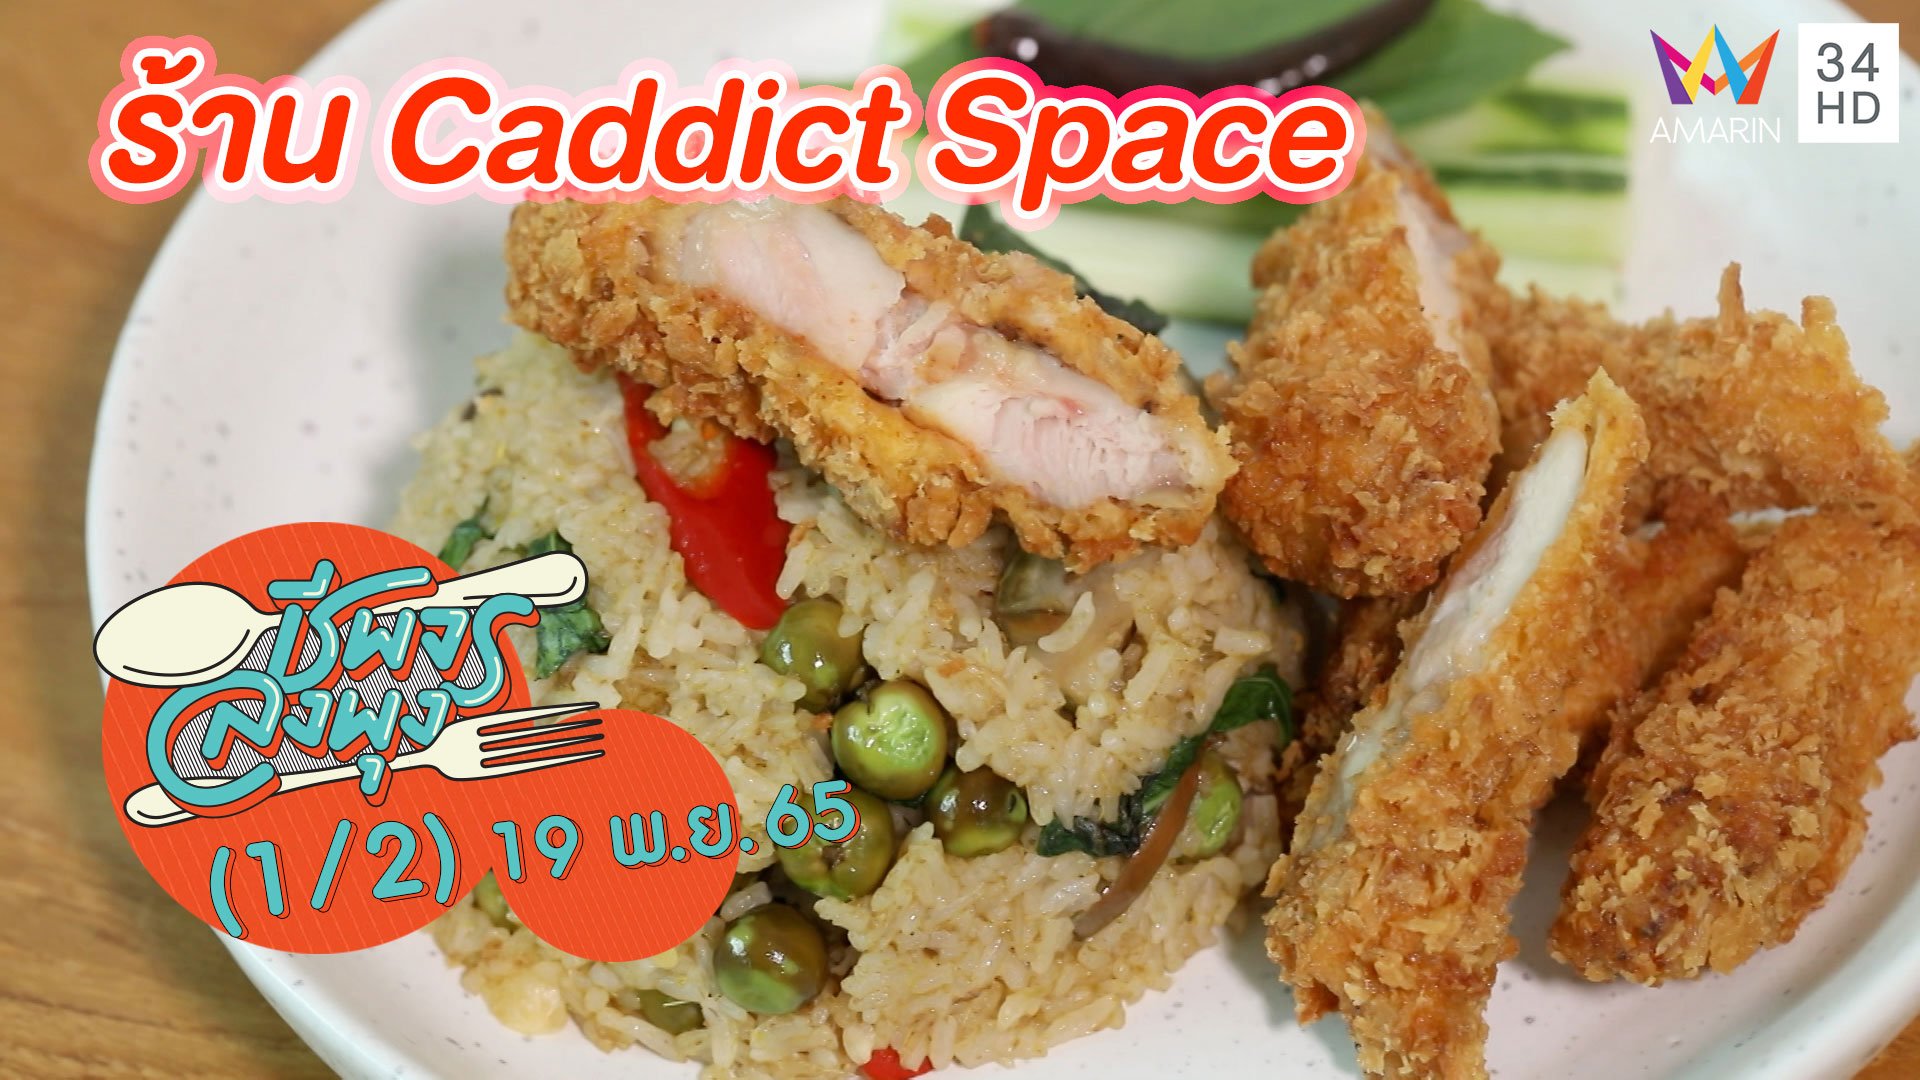 อาหารฟิวชันไทย ยุโรป @ ร้าน Caddict Space | ชีพจรลงพุง | 19 พ.ย. 65 (1/2) | AMARIN TVHD34